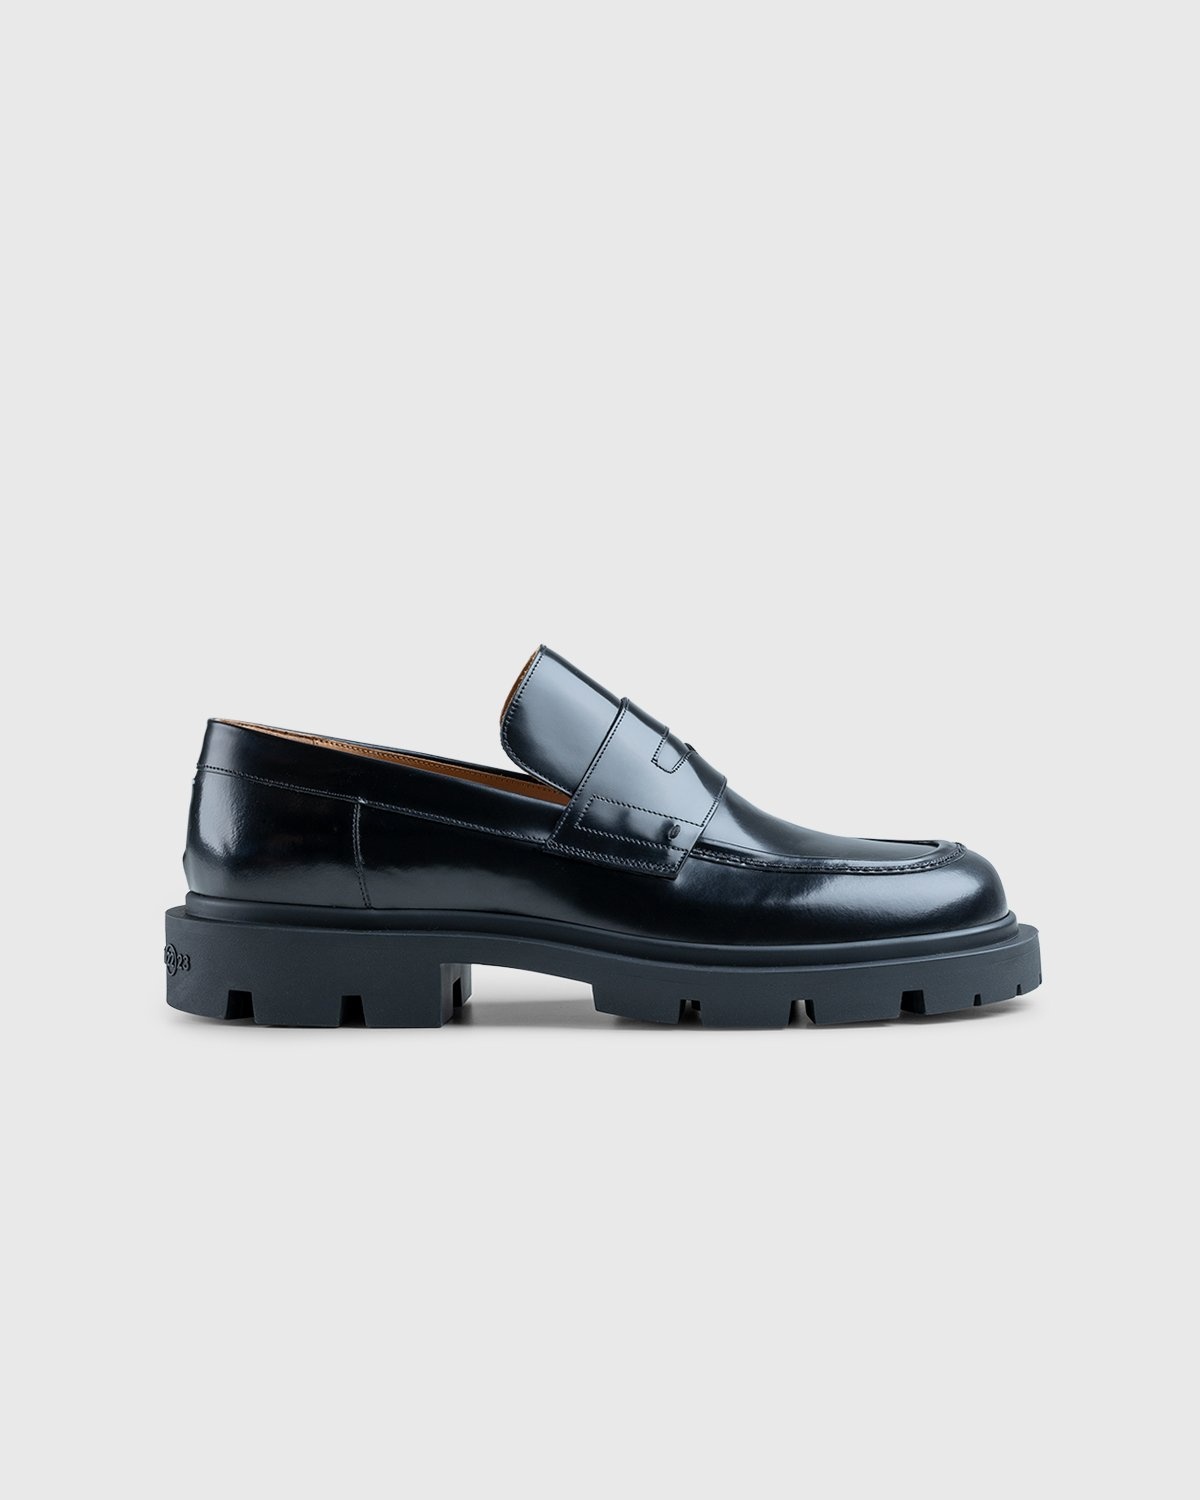 Maison Margiela – Leather Loafers Black - Shoes - Black - Image 1